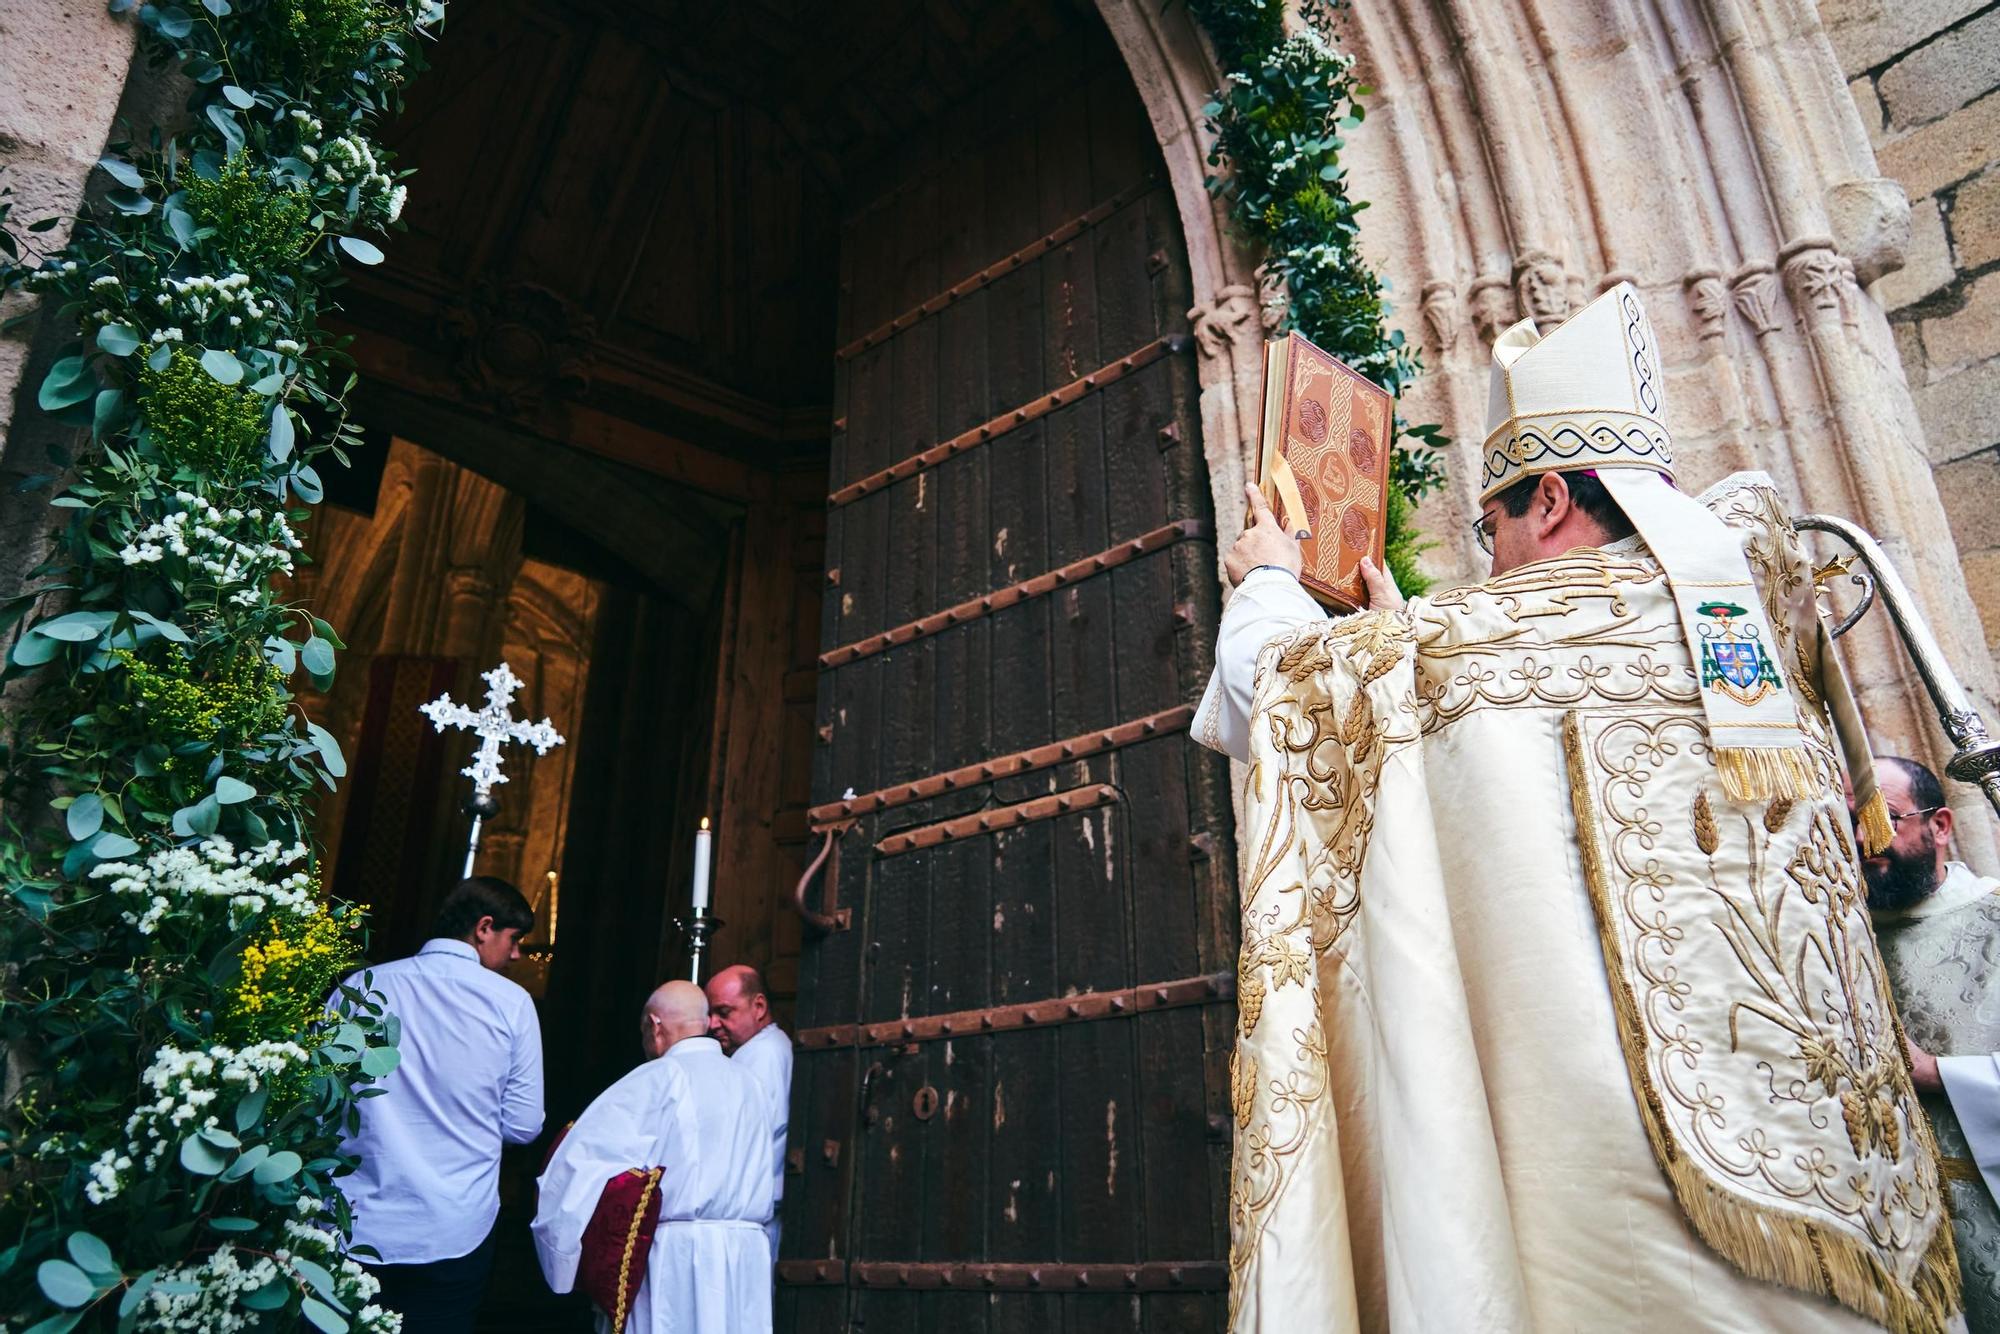 FOTOGALERÍA | Así fue la apertura de la Puerta Santa en la concatedral de Santa María de Cáceres